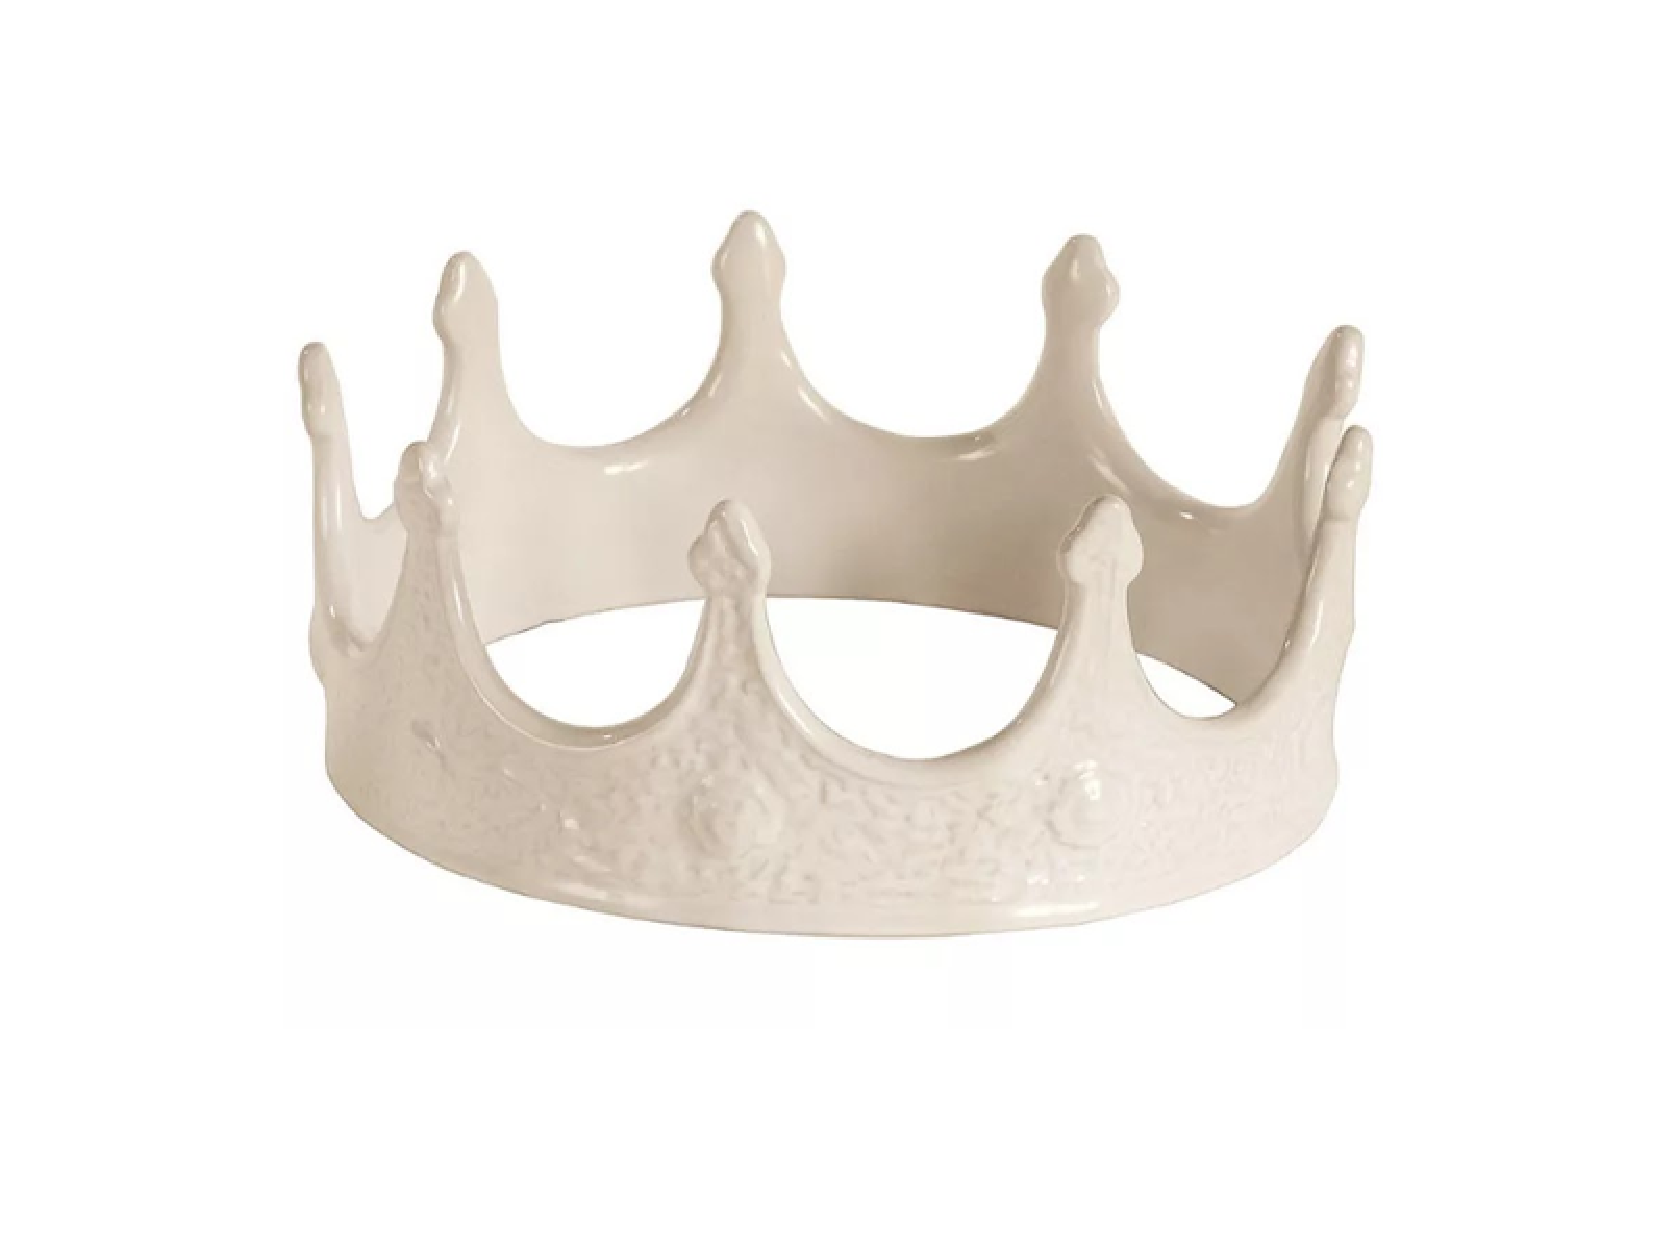 Декоративный объект My Crown, Seletti, 6200 руб. (designboom.ru)